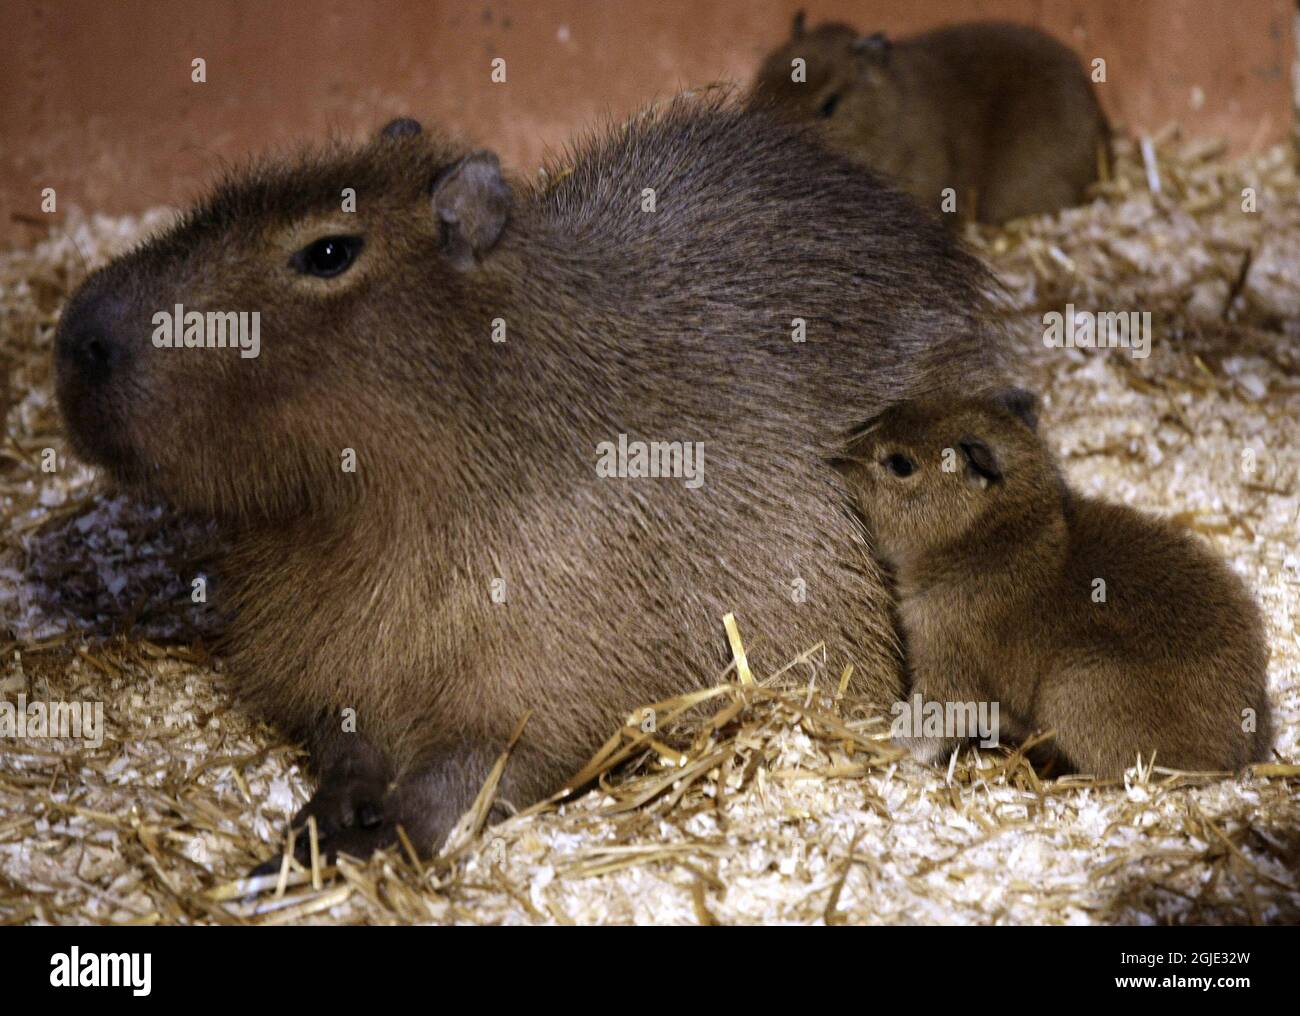 Primer cachorros de Capybara de origen noruego (Hydrochoerus hydrochaeris)  nació el lunes 14 2008 de abril se muestra para el público con su madre en  el zoológico de Kristiansand en Noruega Fotografía